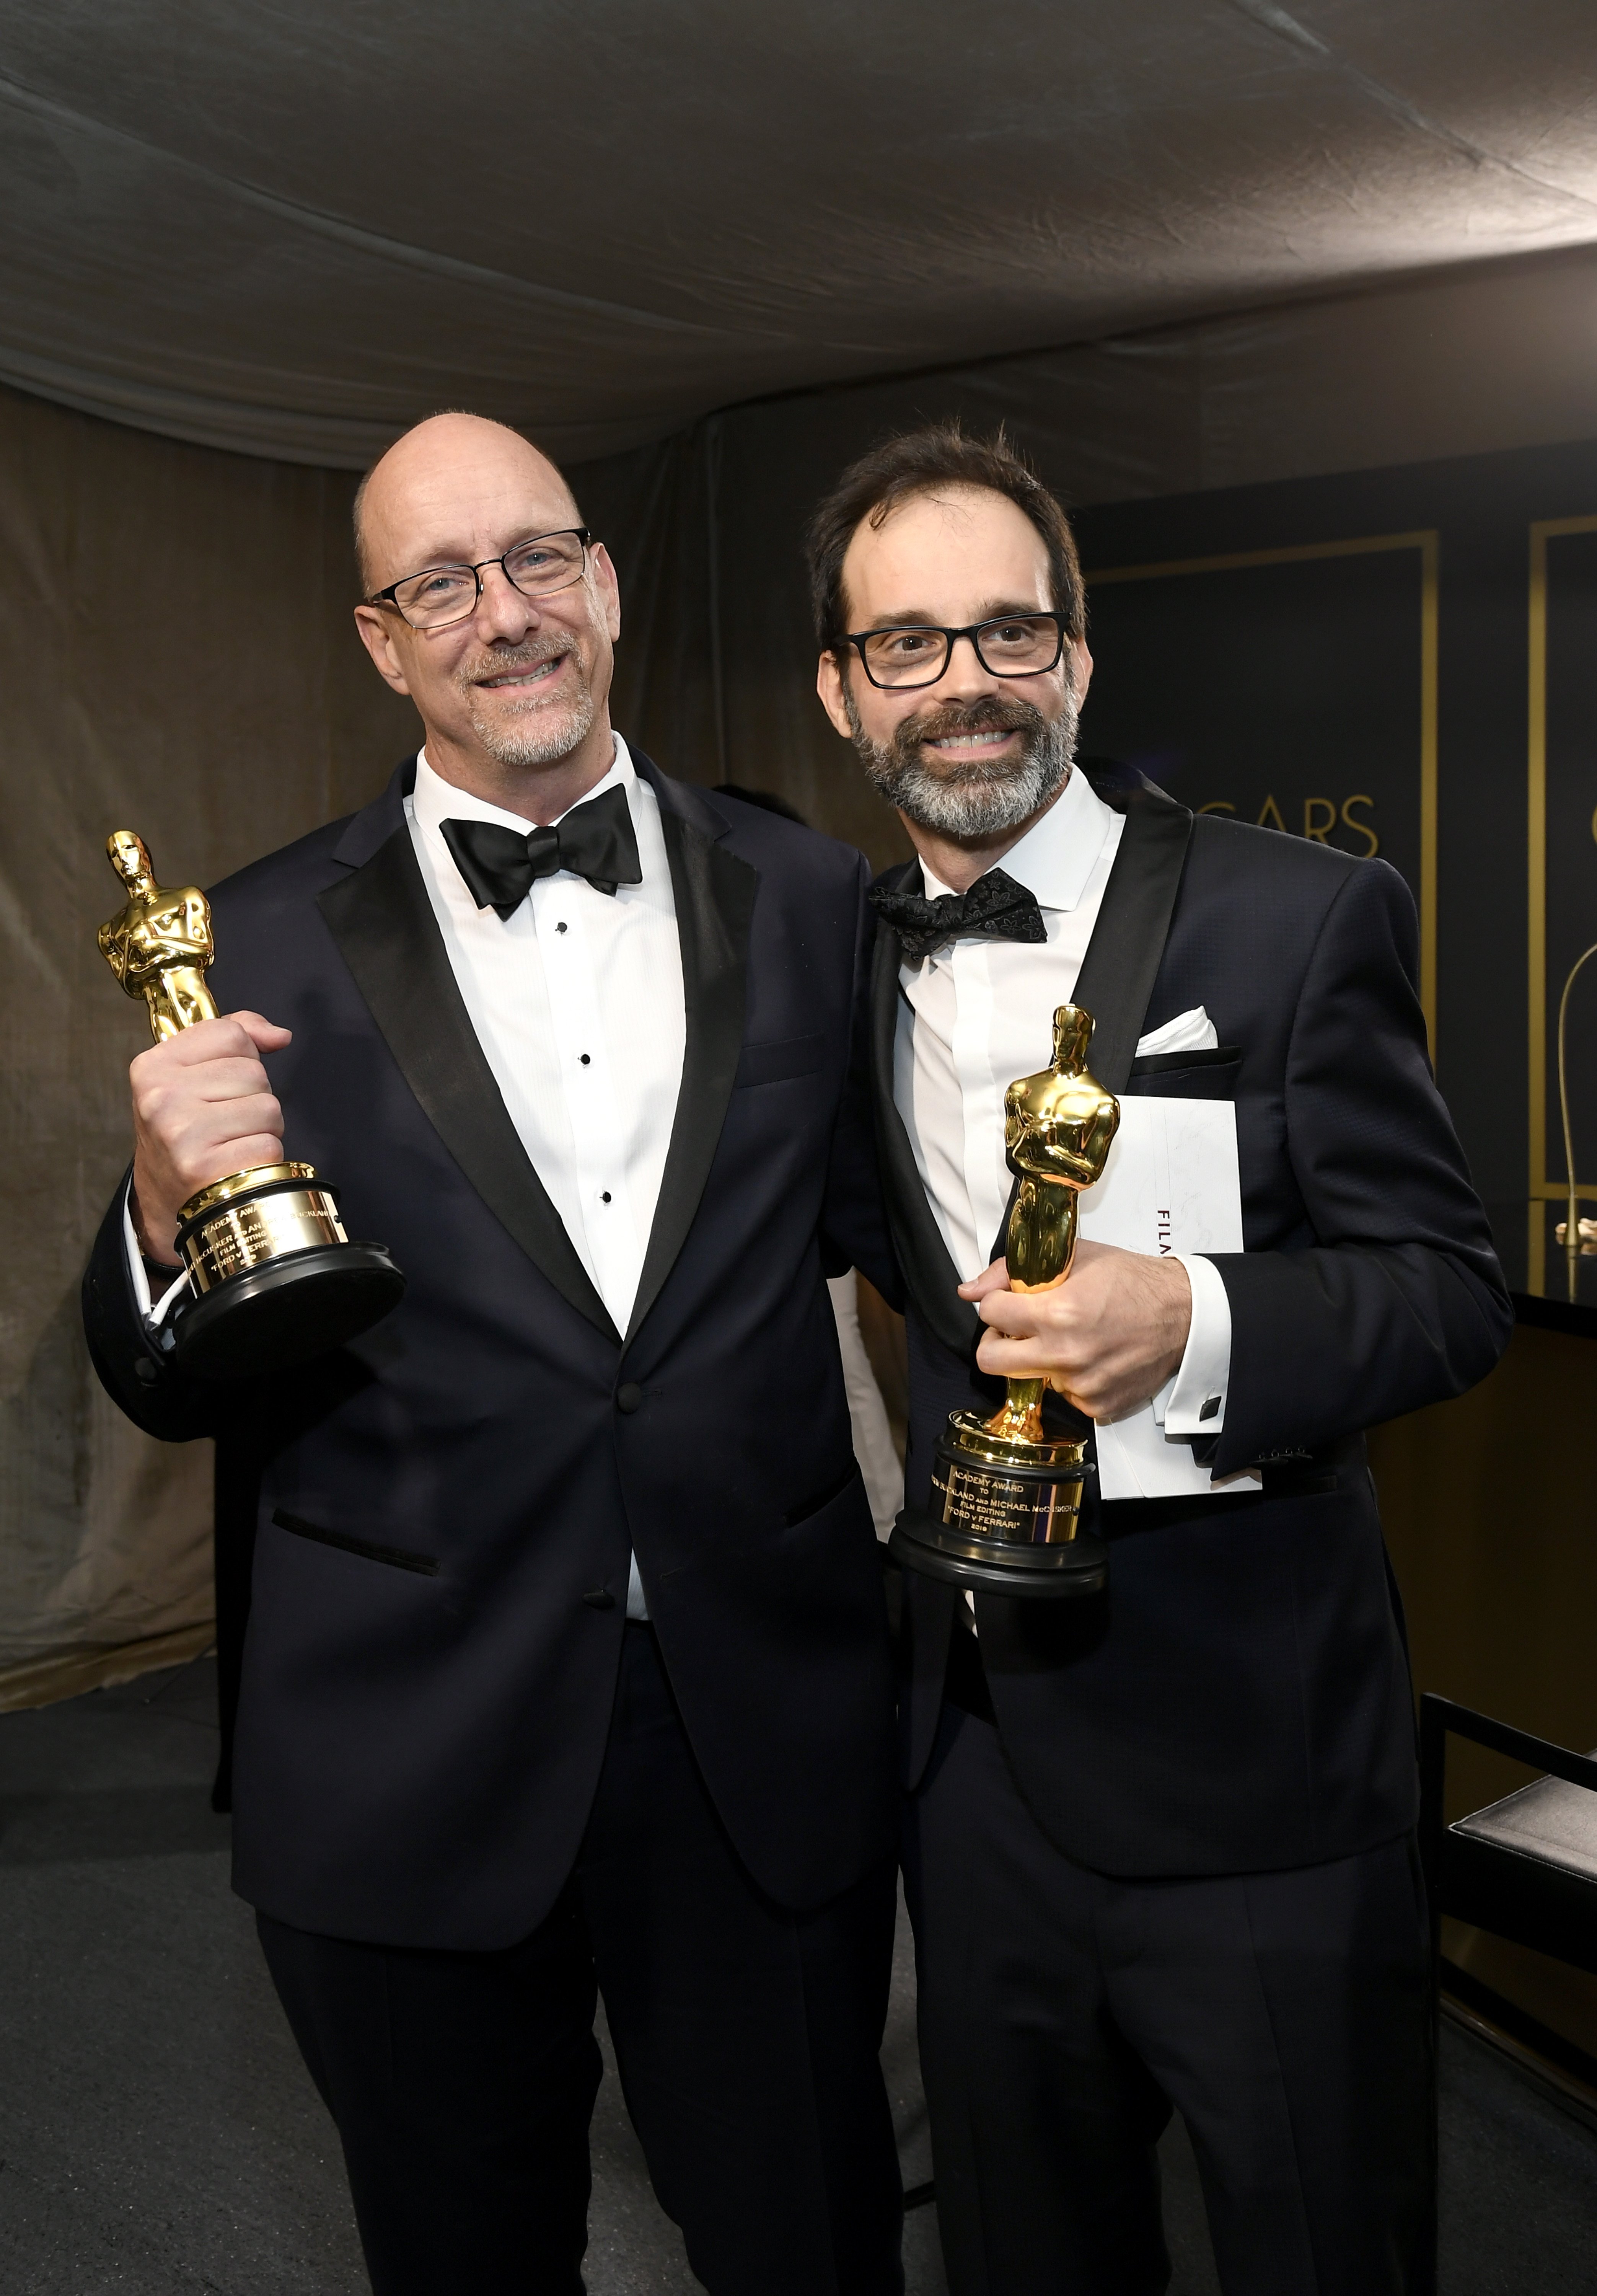 Los editores de cine Michael McCusker y Andrew Buckland, ganadores del premio Film Editing por "Ford v Ferrari", asisten a la 92a edición anual de los Premios de la Academia Governors Ball en Hollywood y Highland el 9 de febrero de 2020 en Hollywood, California. | Foto: Getty Images